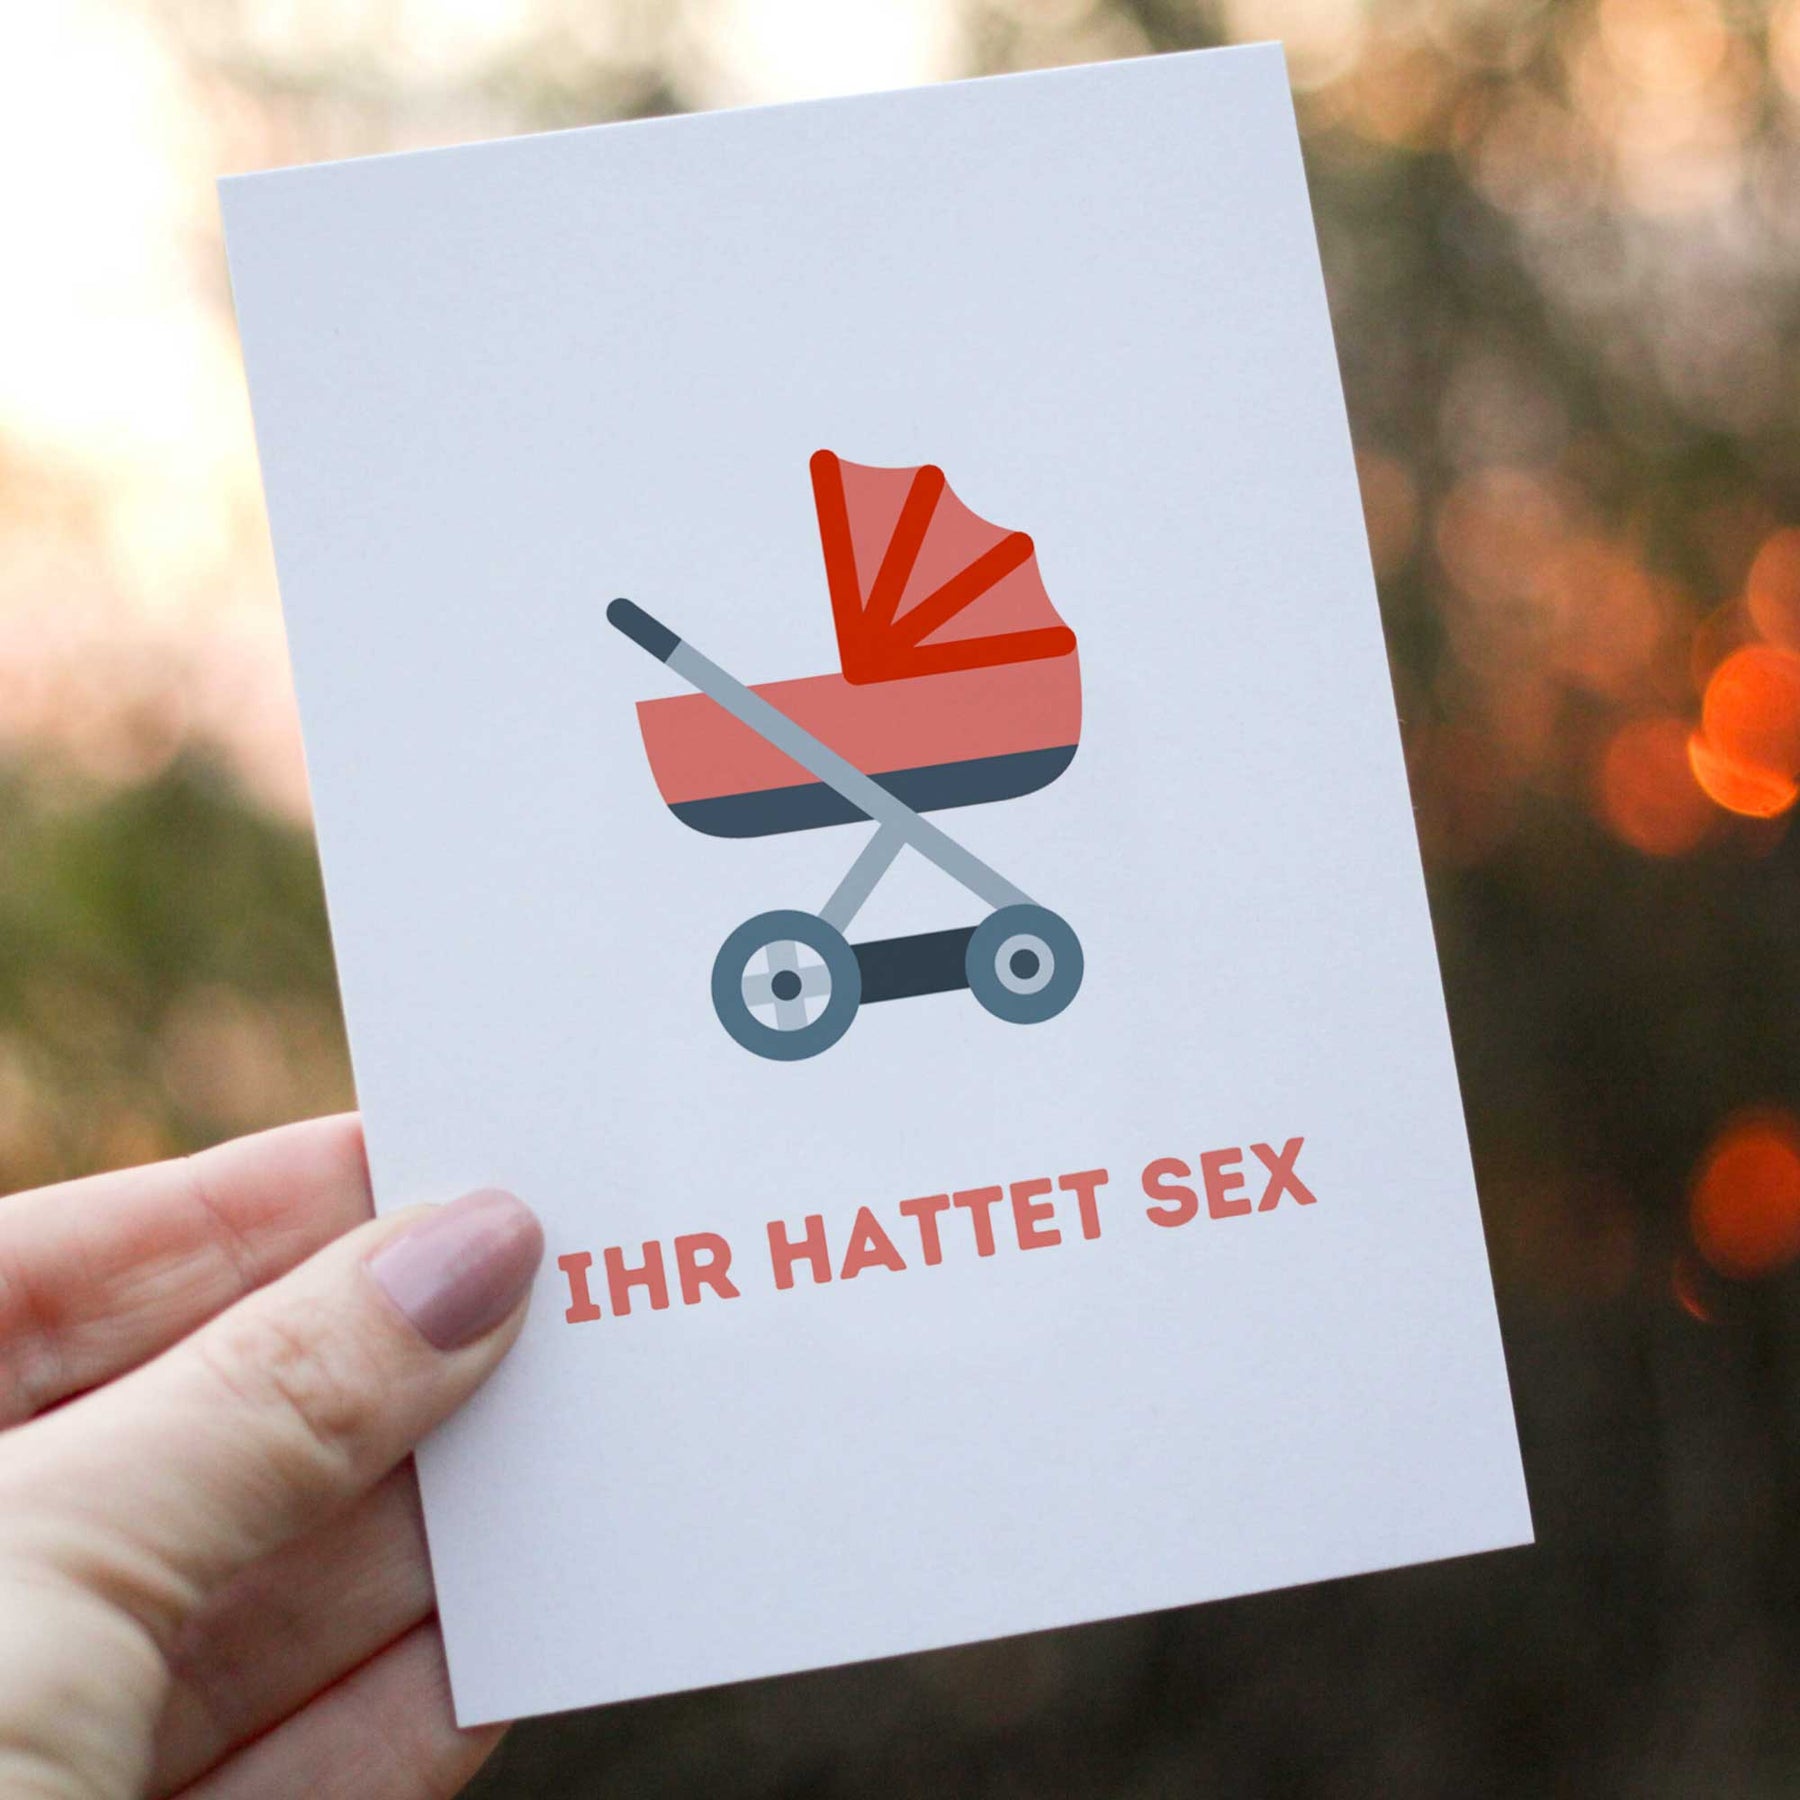 Postkarte - "IHR HATTET SEX" - Pihu